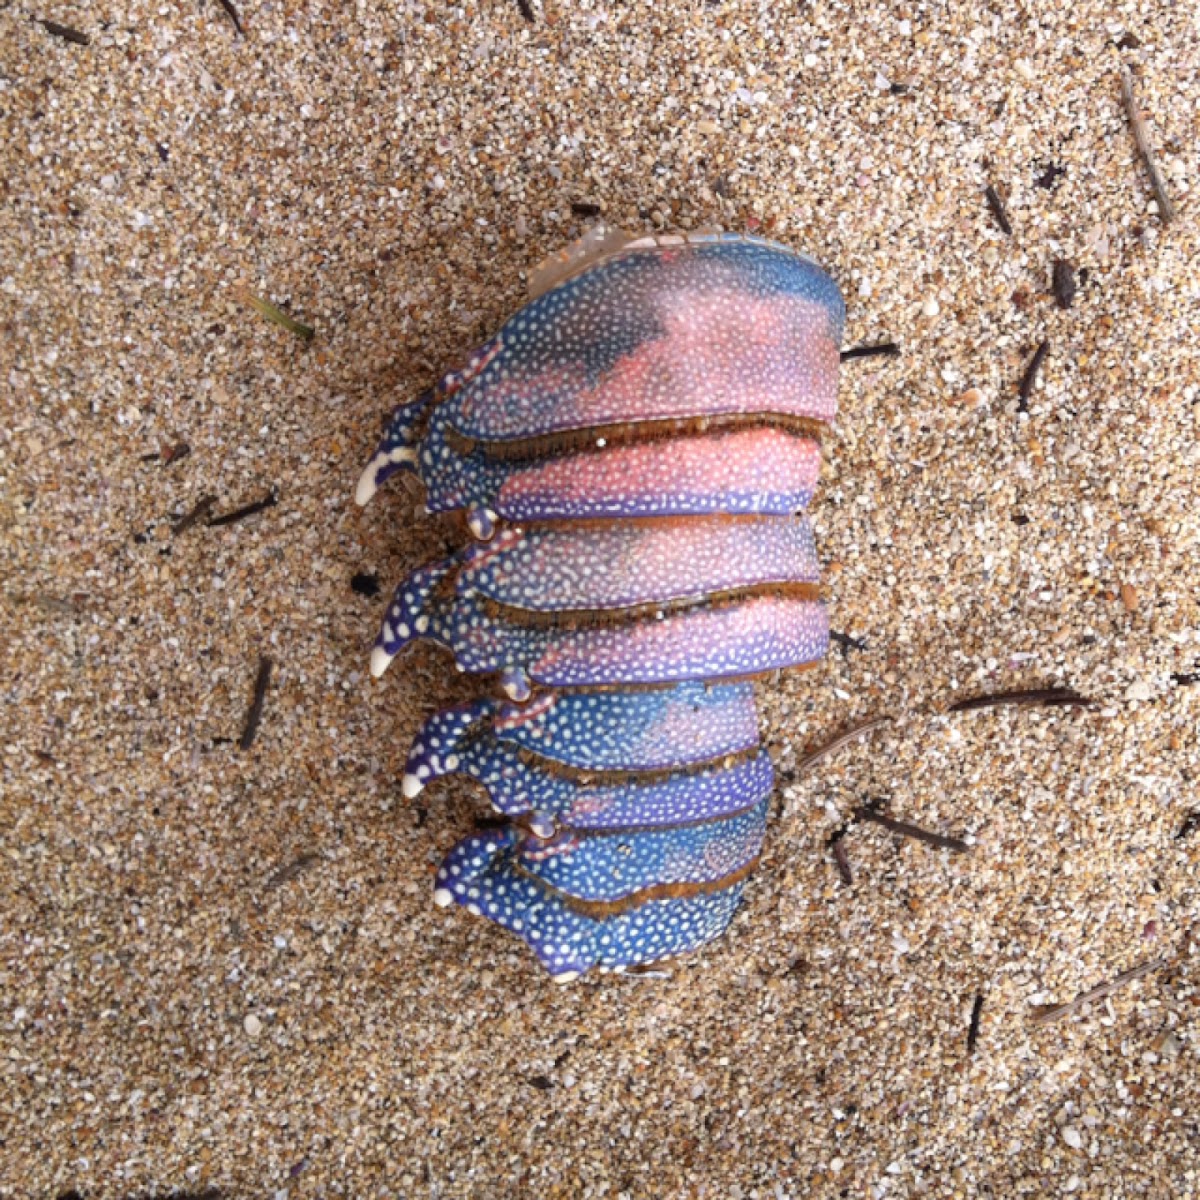 Lobster shell